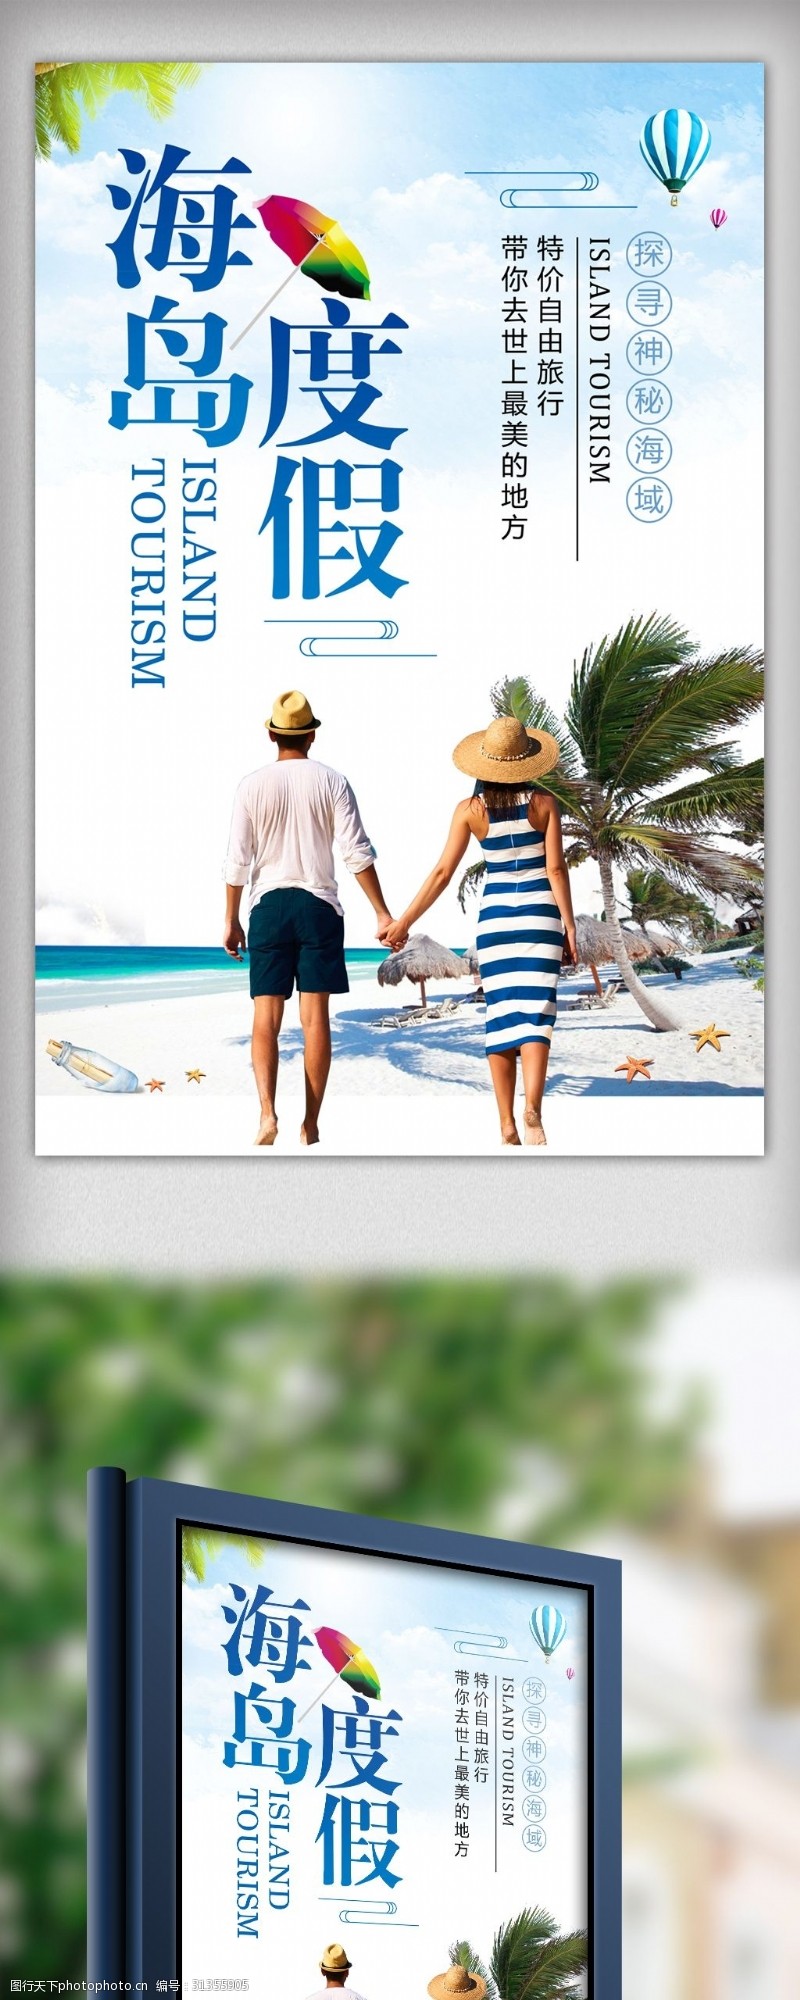 热气球简约海岛度假旅游宣传海报设计